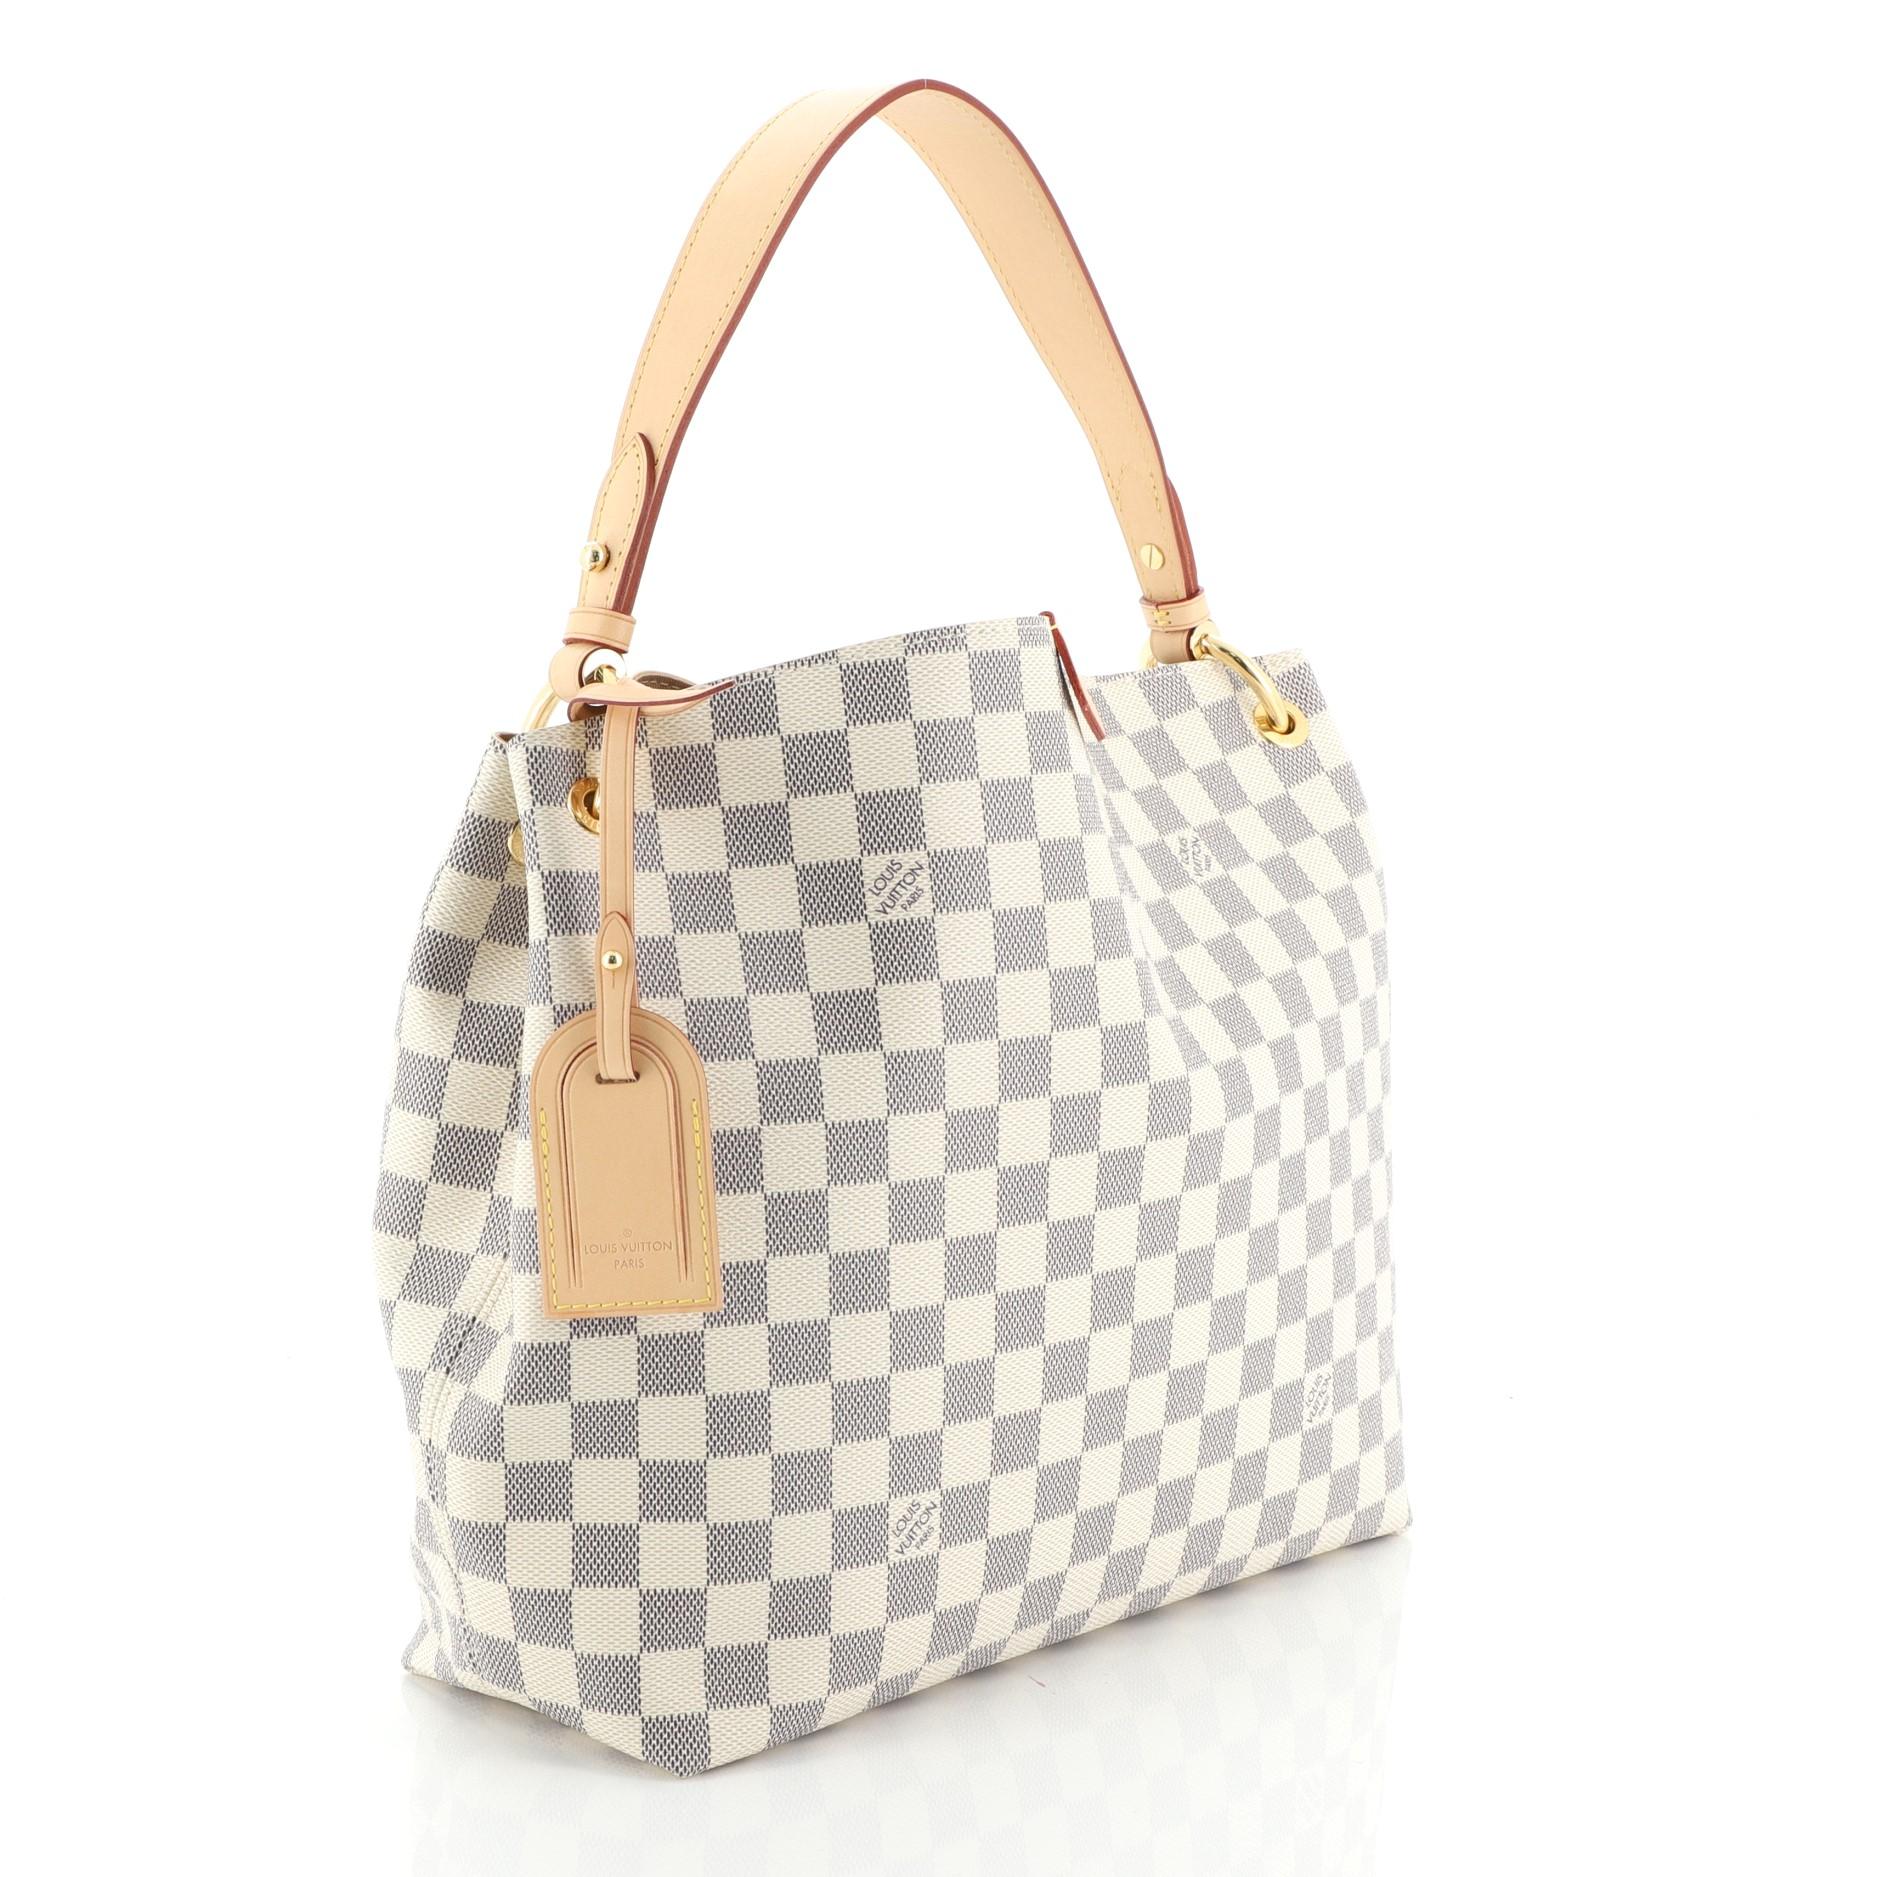 Beige Louis Vuitton Graceful Handbag Damier PM